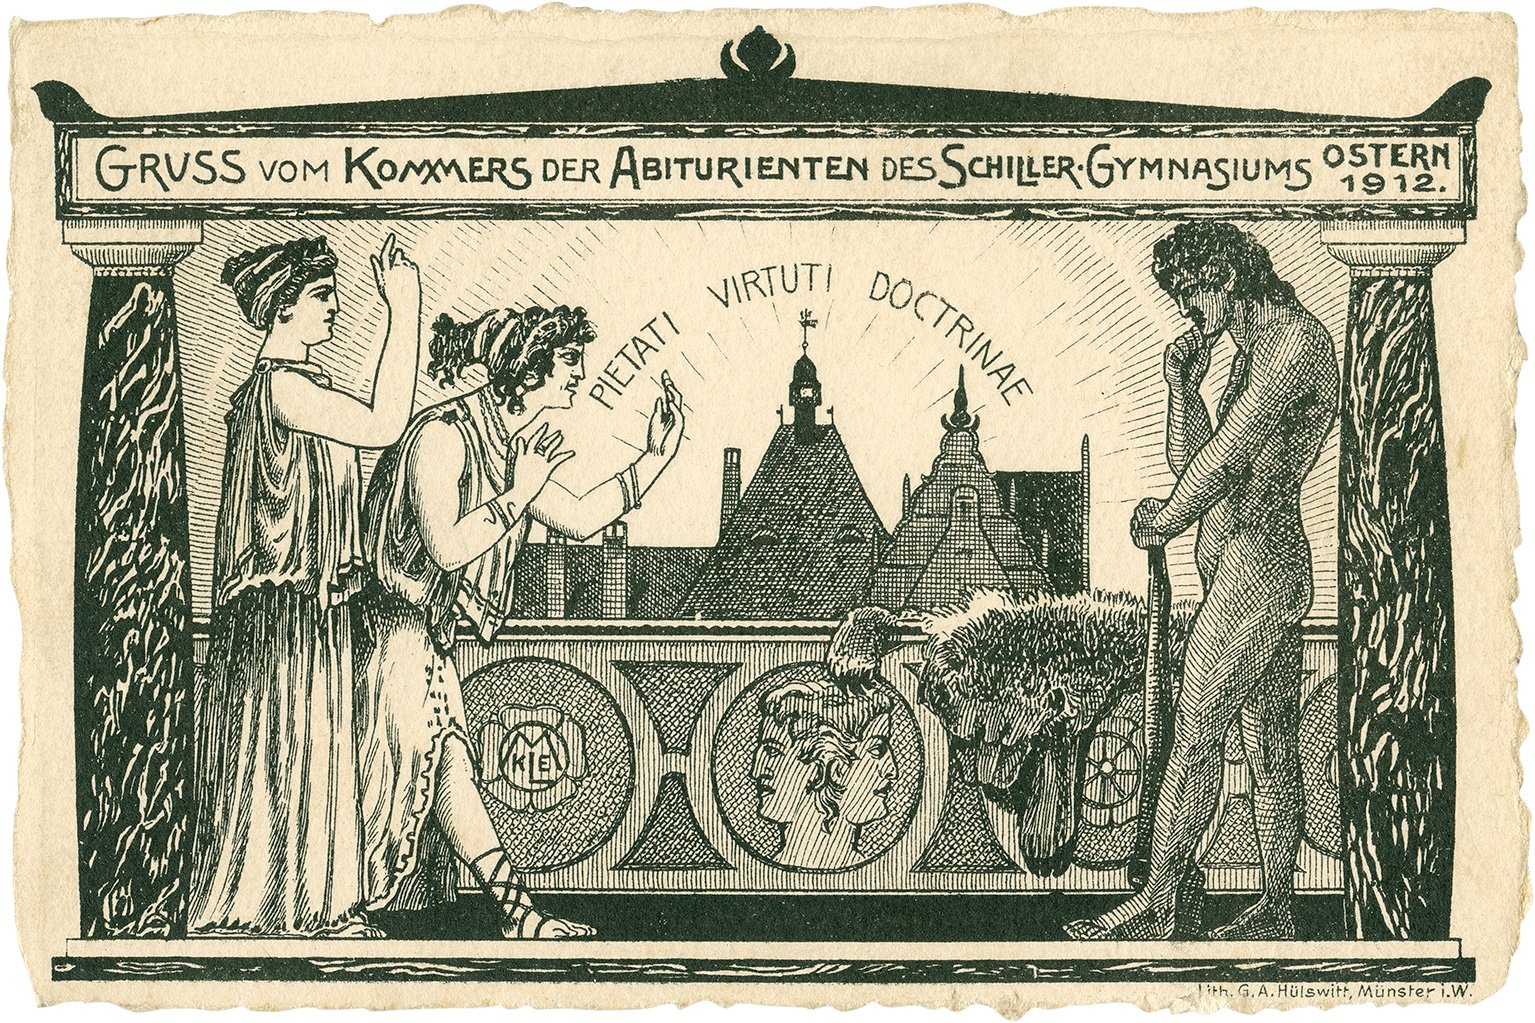 Postkarte: Gruß vom Kommers der Abiturienten des Schillergymnasiums Ostern 1912 (Stadtmuseum Münster CC BY-NC-SA)